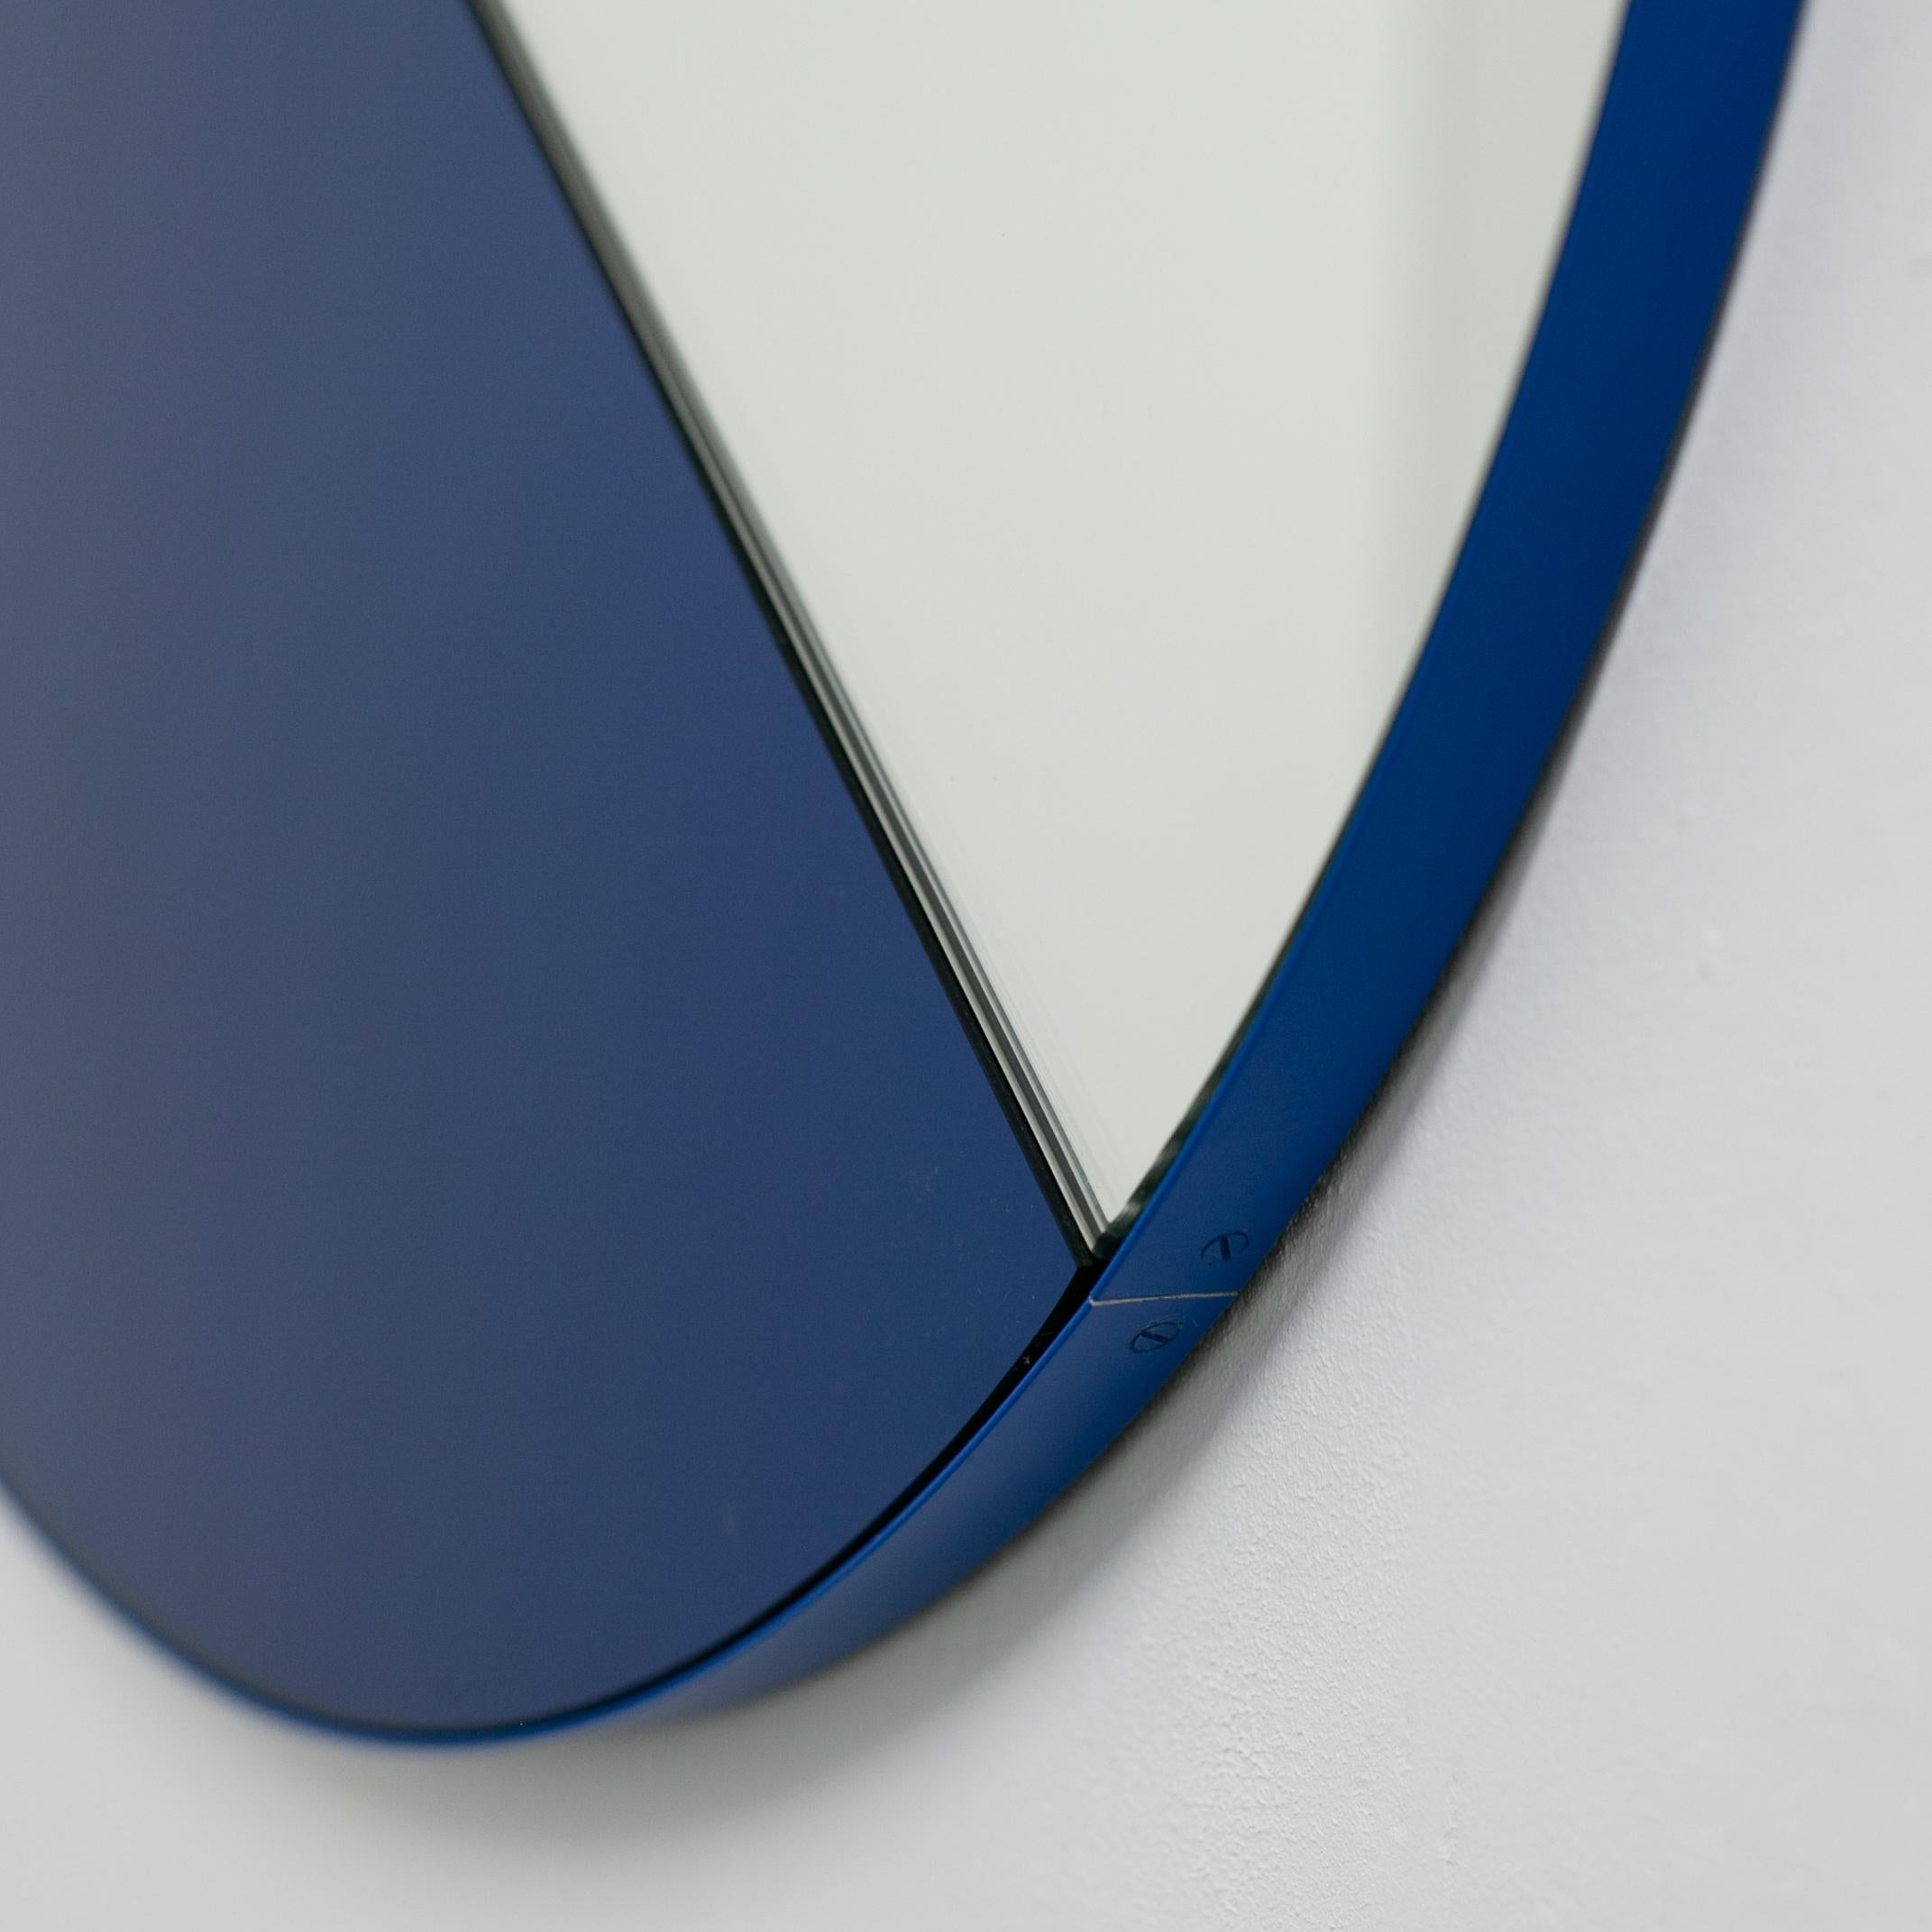 Orbis Dualis Zeitgenössischer runder Spiegel in Blau und Silber mit blauem Rahmen, groß im Angebot 1